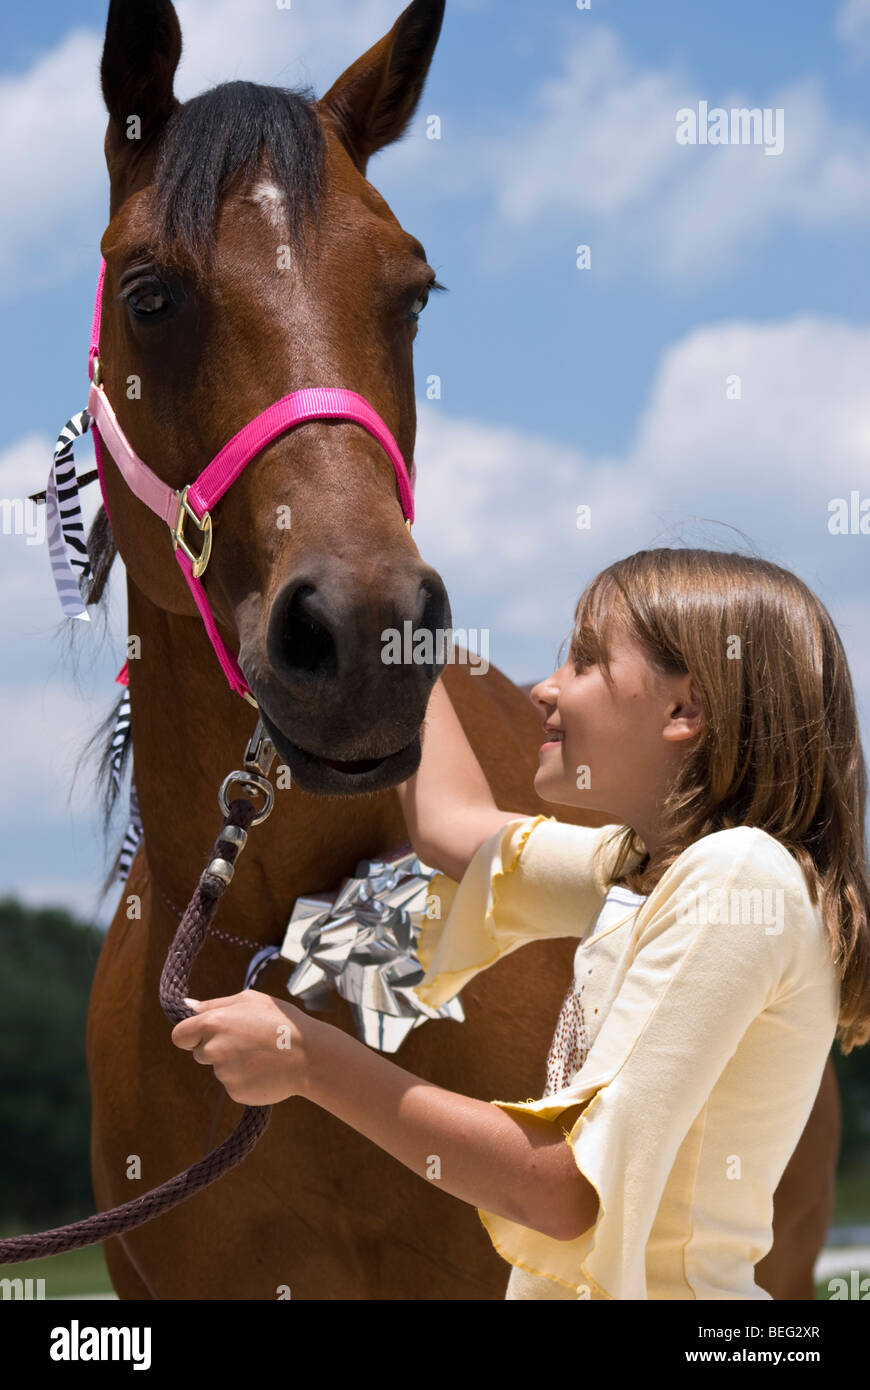 Ein kleines Mädchen mit Freude und Zuneigung auf ein schönes Pferd, das ihr als Geschenk zum Geburtstag geschenkt worden ist. Stockfoto